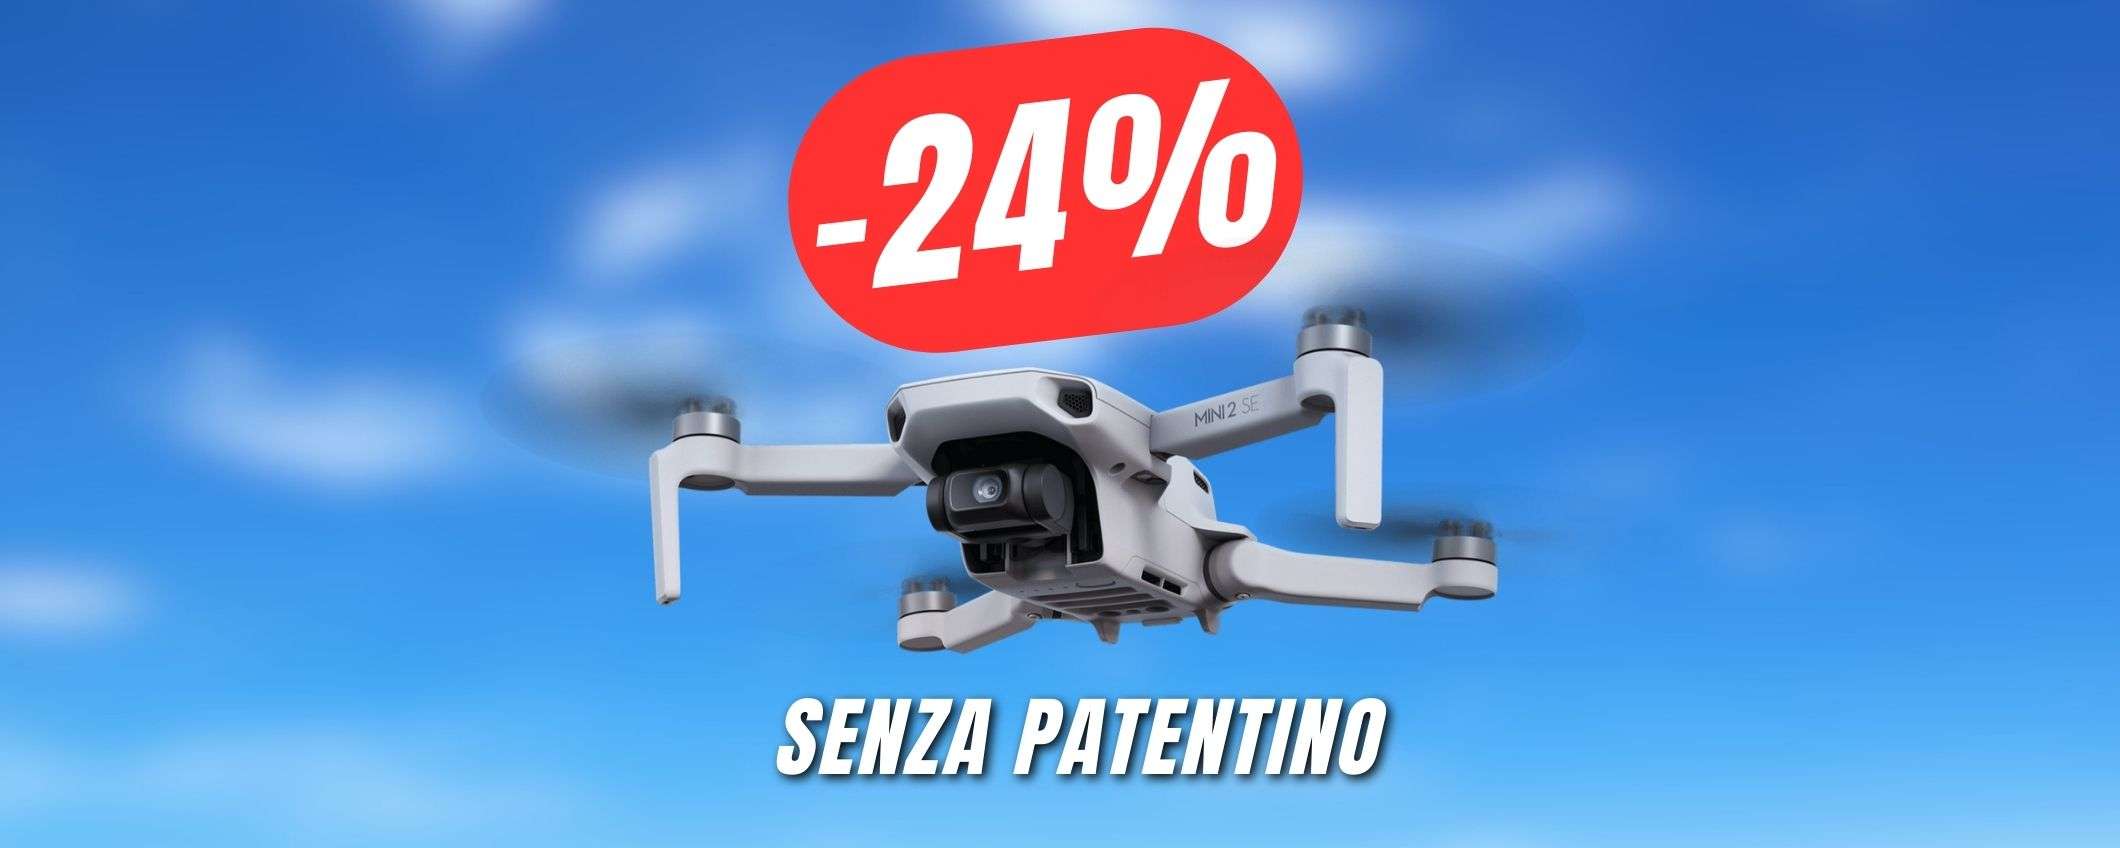 Vola senza patentino con il DRONE DJI a 233€!